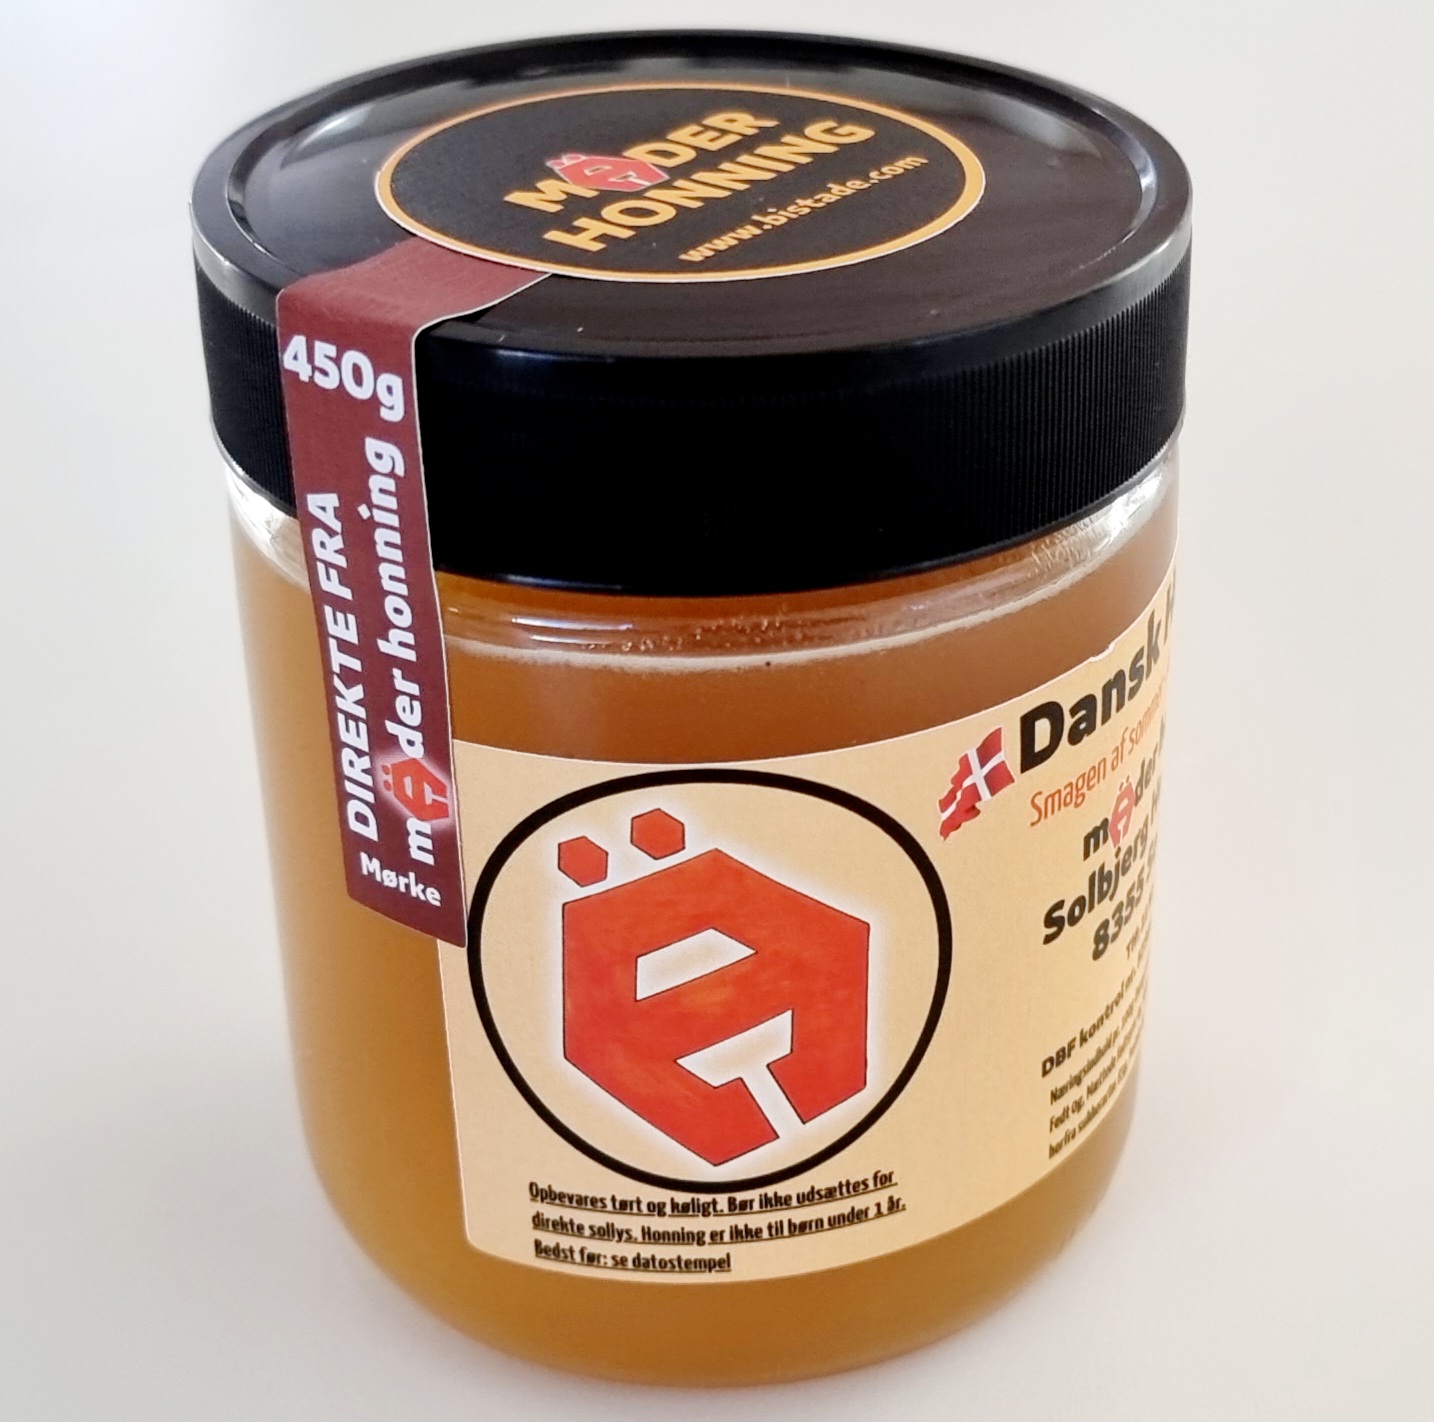 Dansk honning avlet i egen bigård. Mäder Honning - 450g Sommerhonning fra Mørke